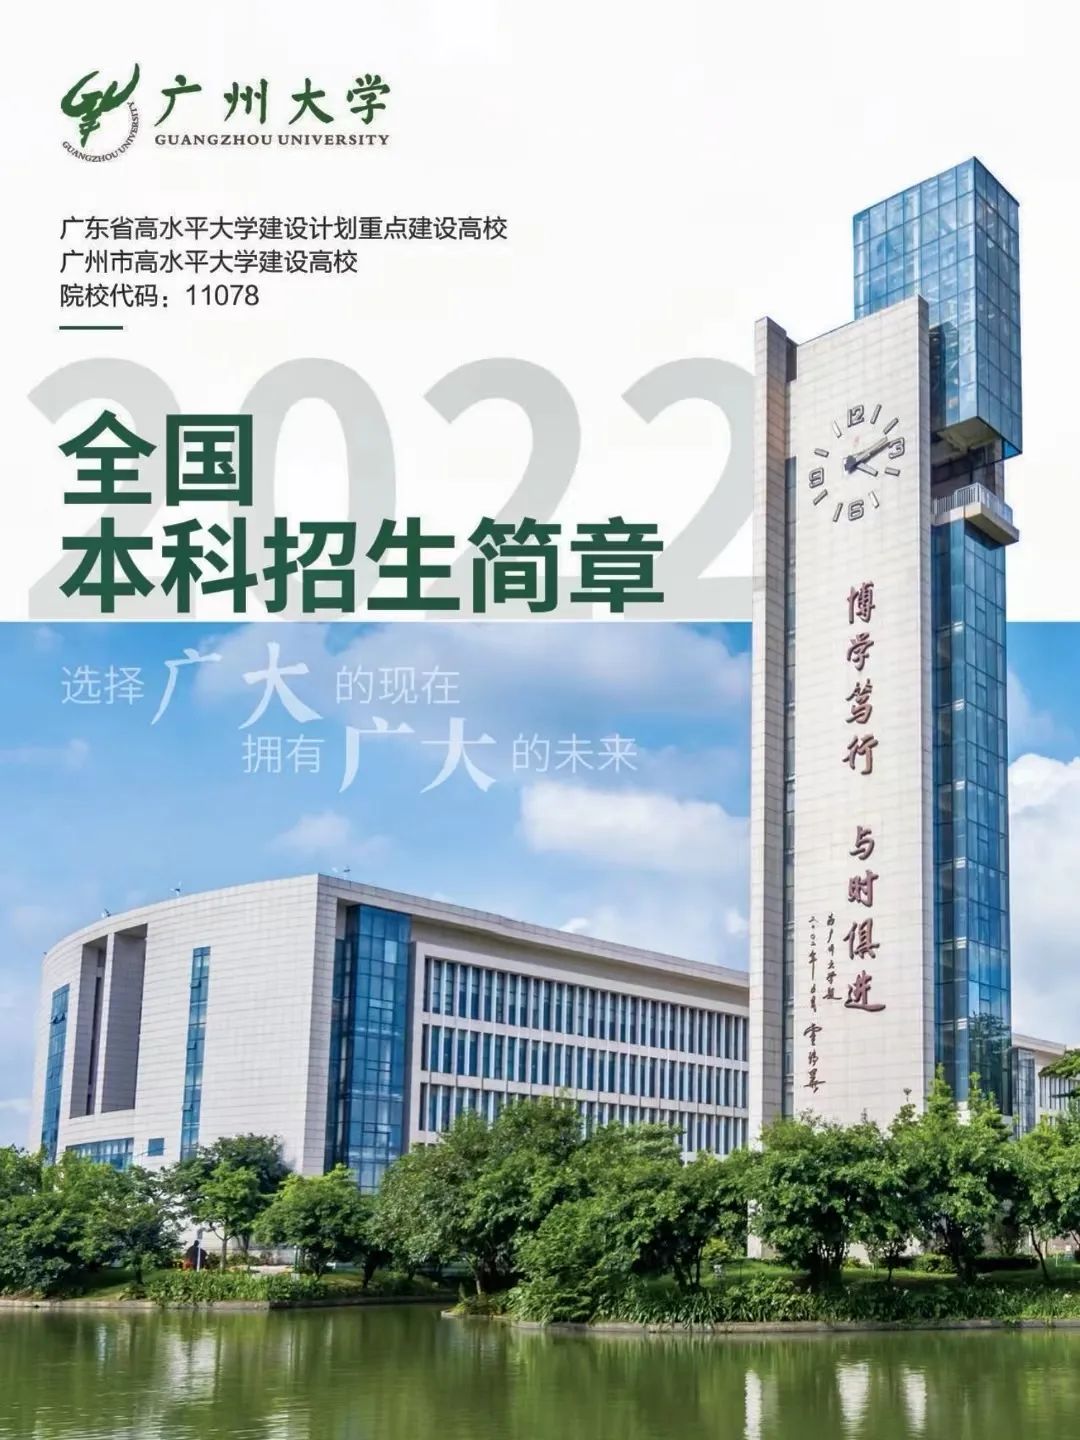 2022年广州大学本科舞蹈编导、音乐学等专业招生简章、招生要点、招生计划